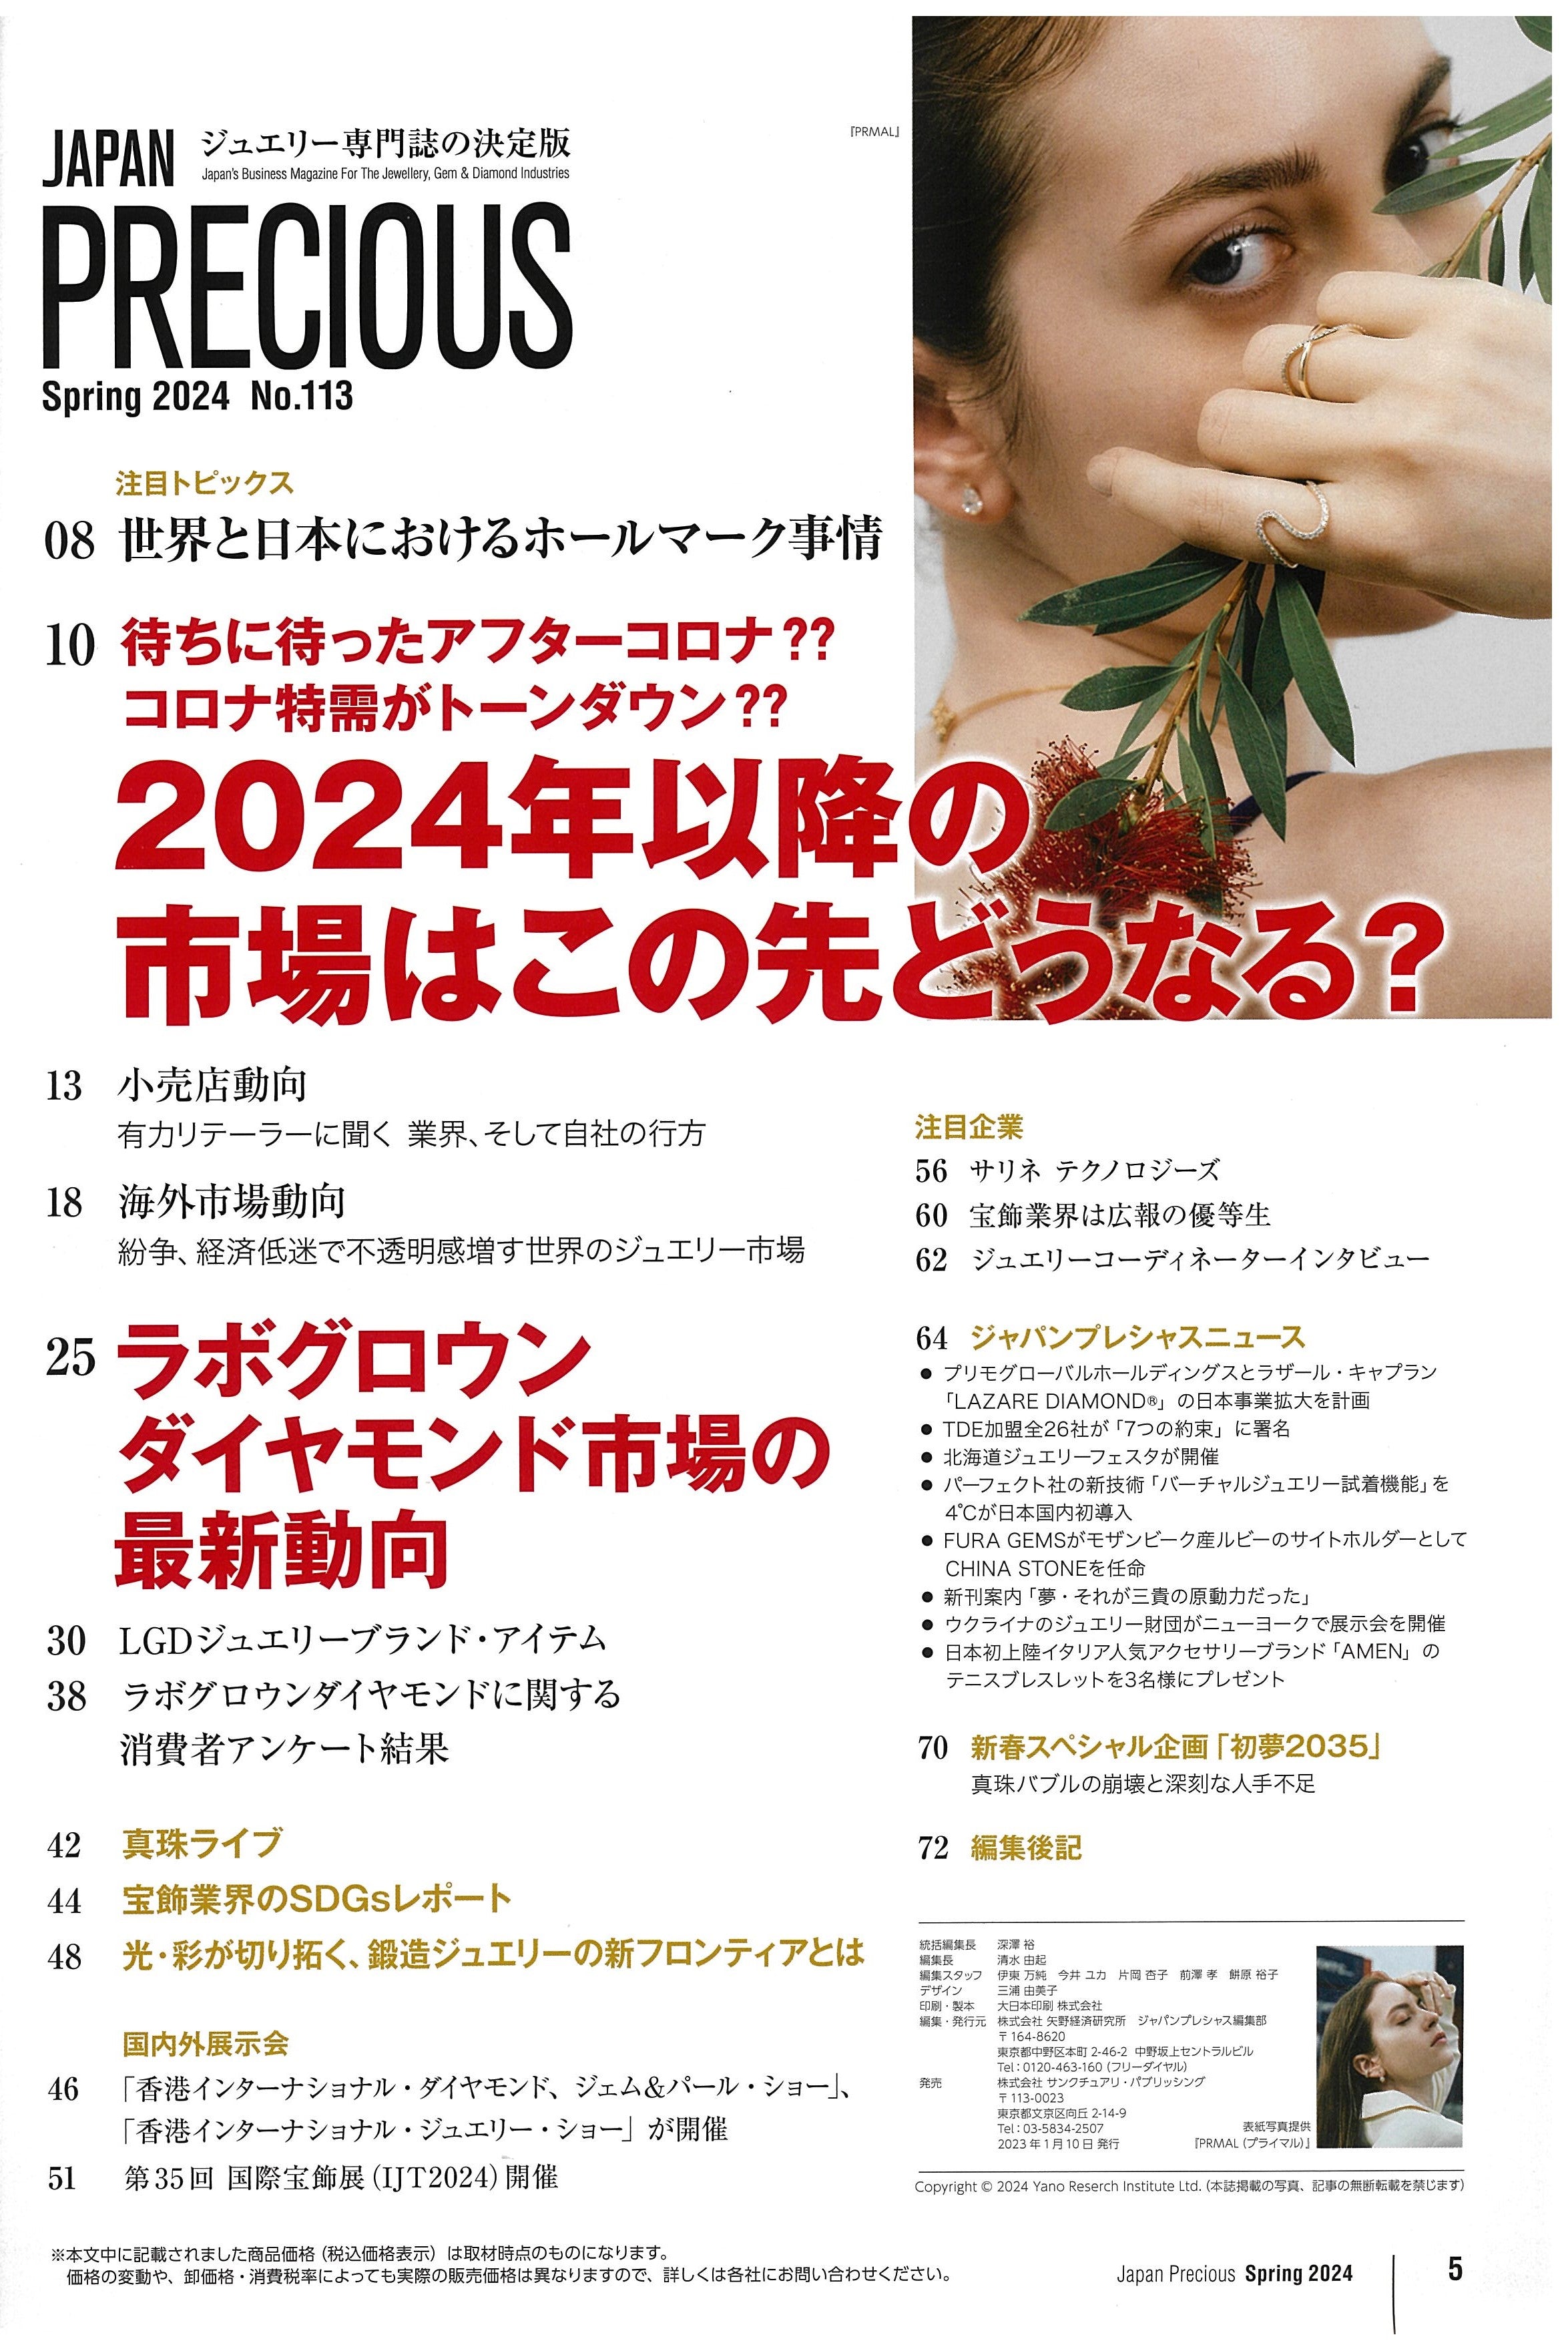 JAPAN PRECIOUS, 2024 Spring